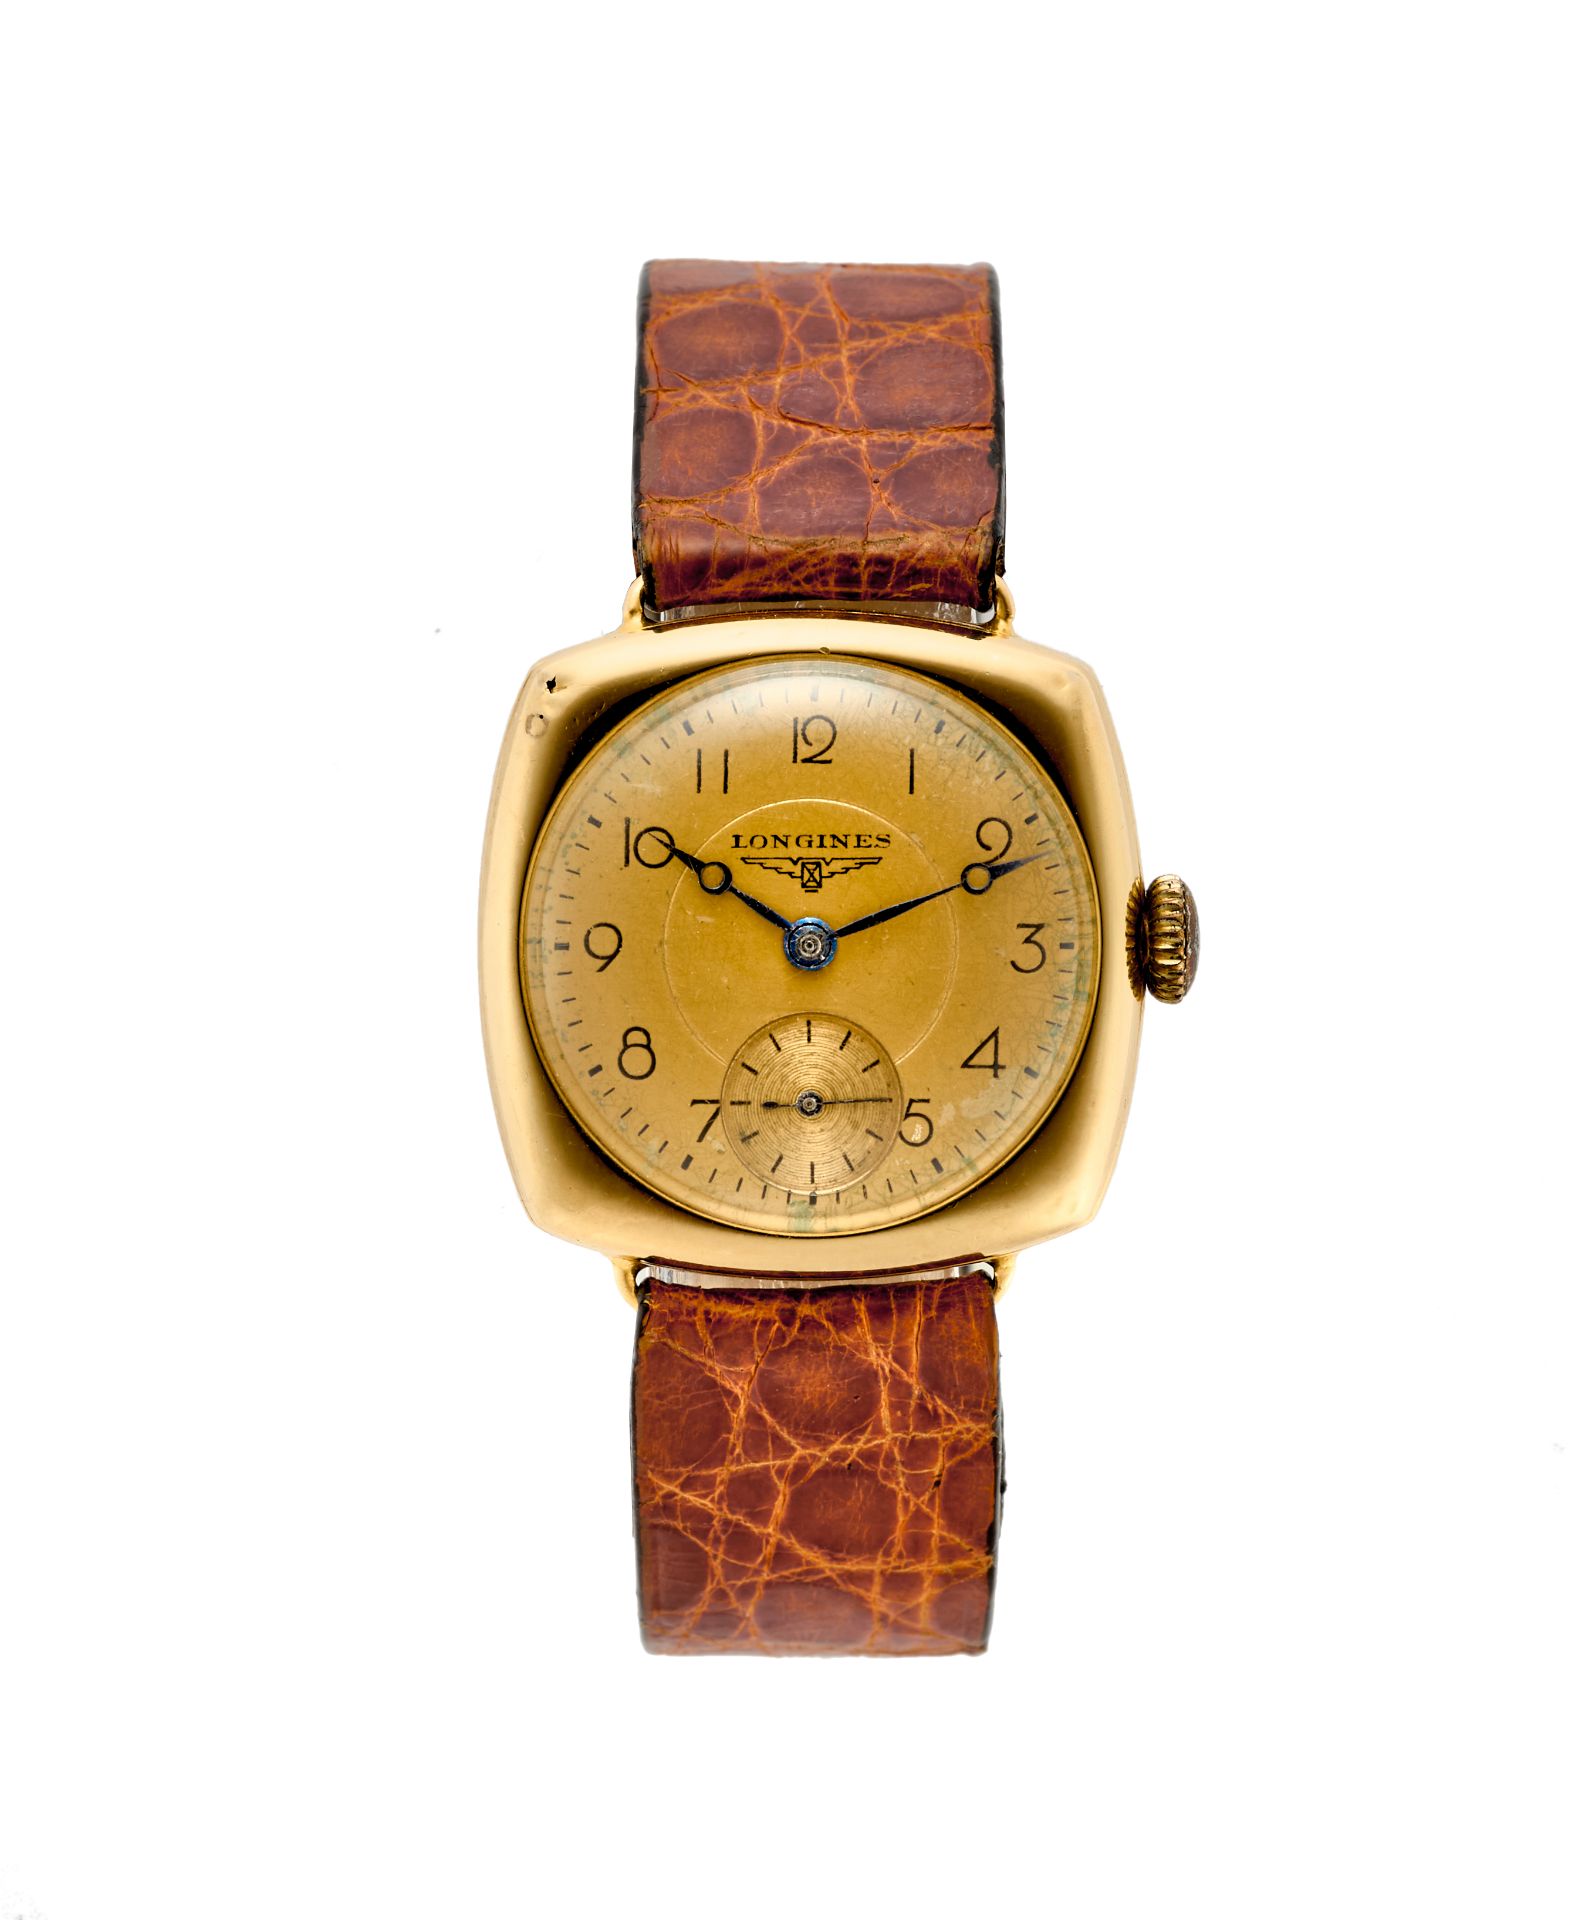 Longines, CarrÄ CambreGent's 18K gold wristwatch1920sDial, movement and case signedManual-wind